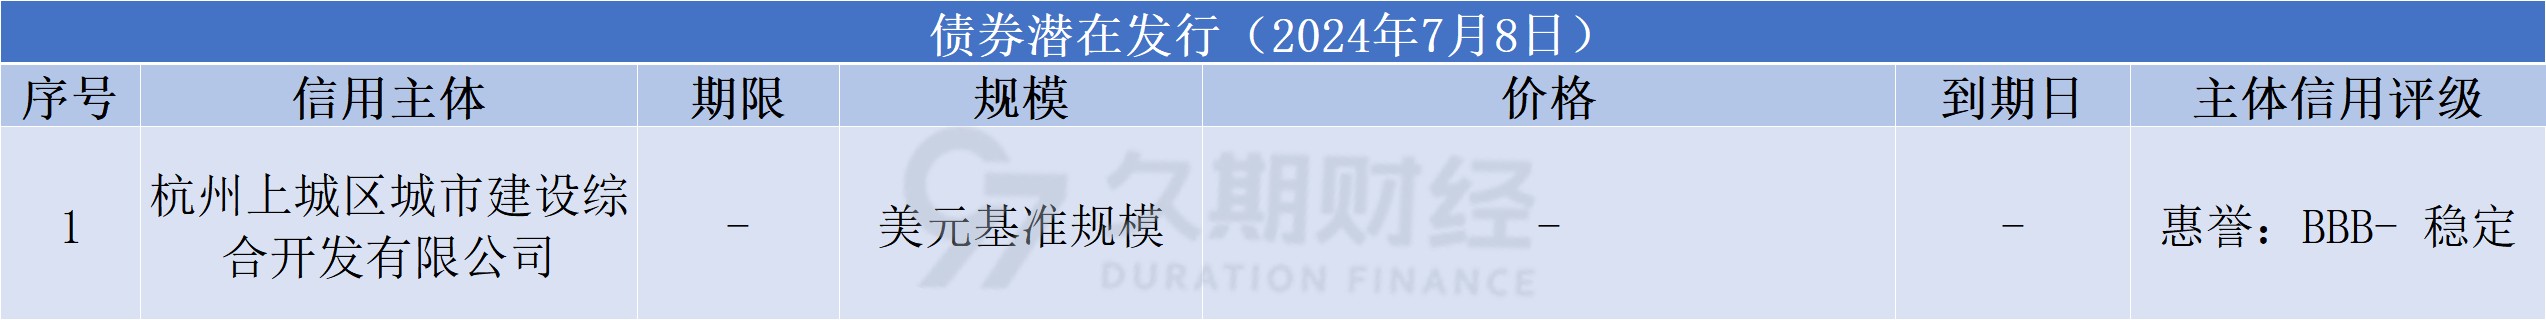 中资离岸债每日总结(7.8)|农业银行(01288.HK)、招商银行(03968.HK)等发行